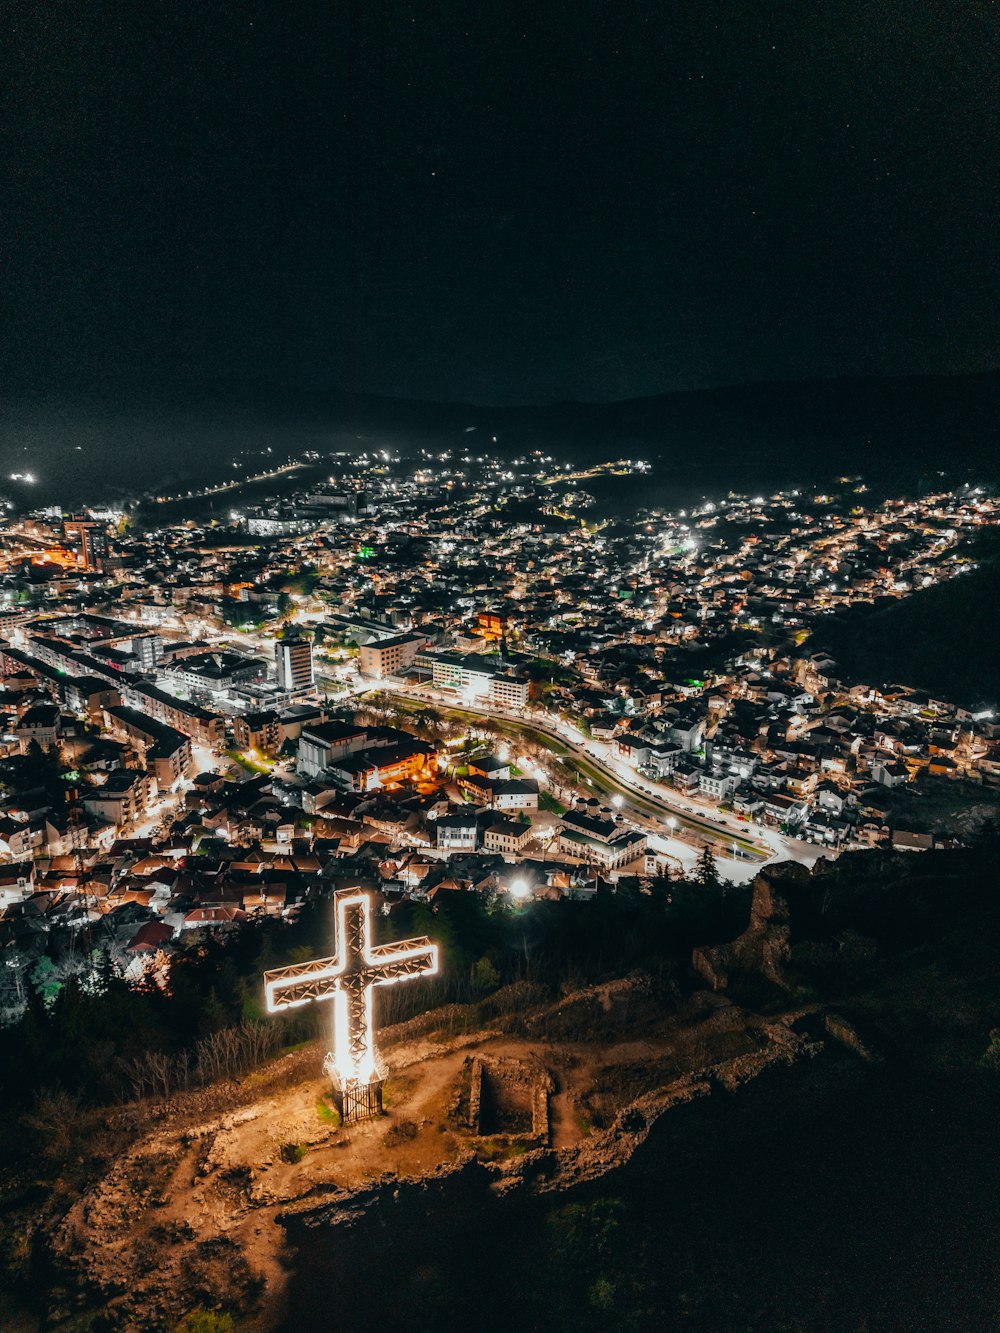 Una ciudad de noche con una cruz iluminada en primer plano